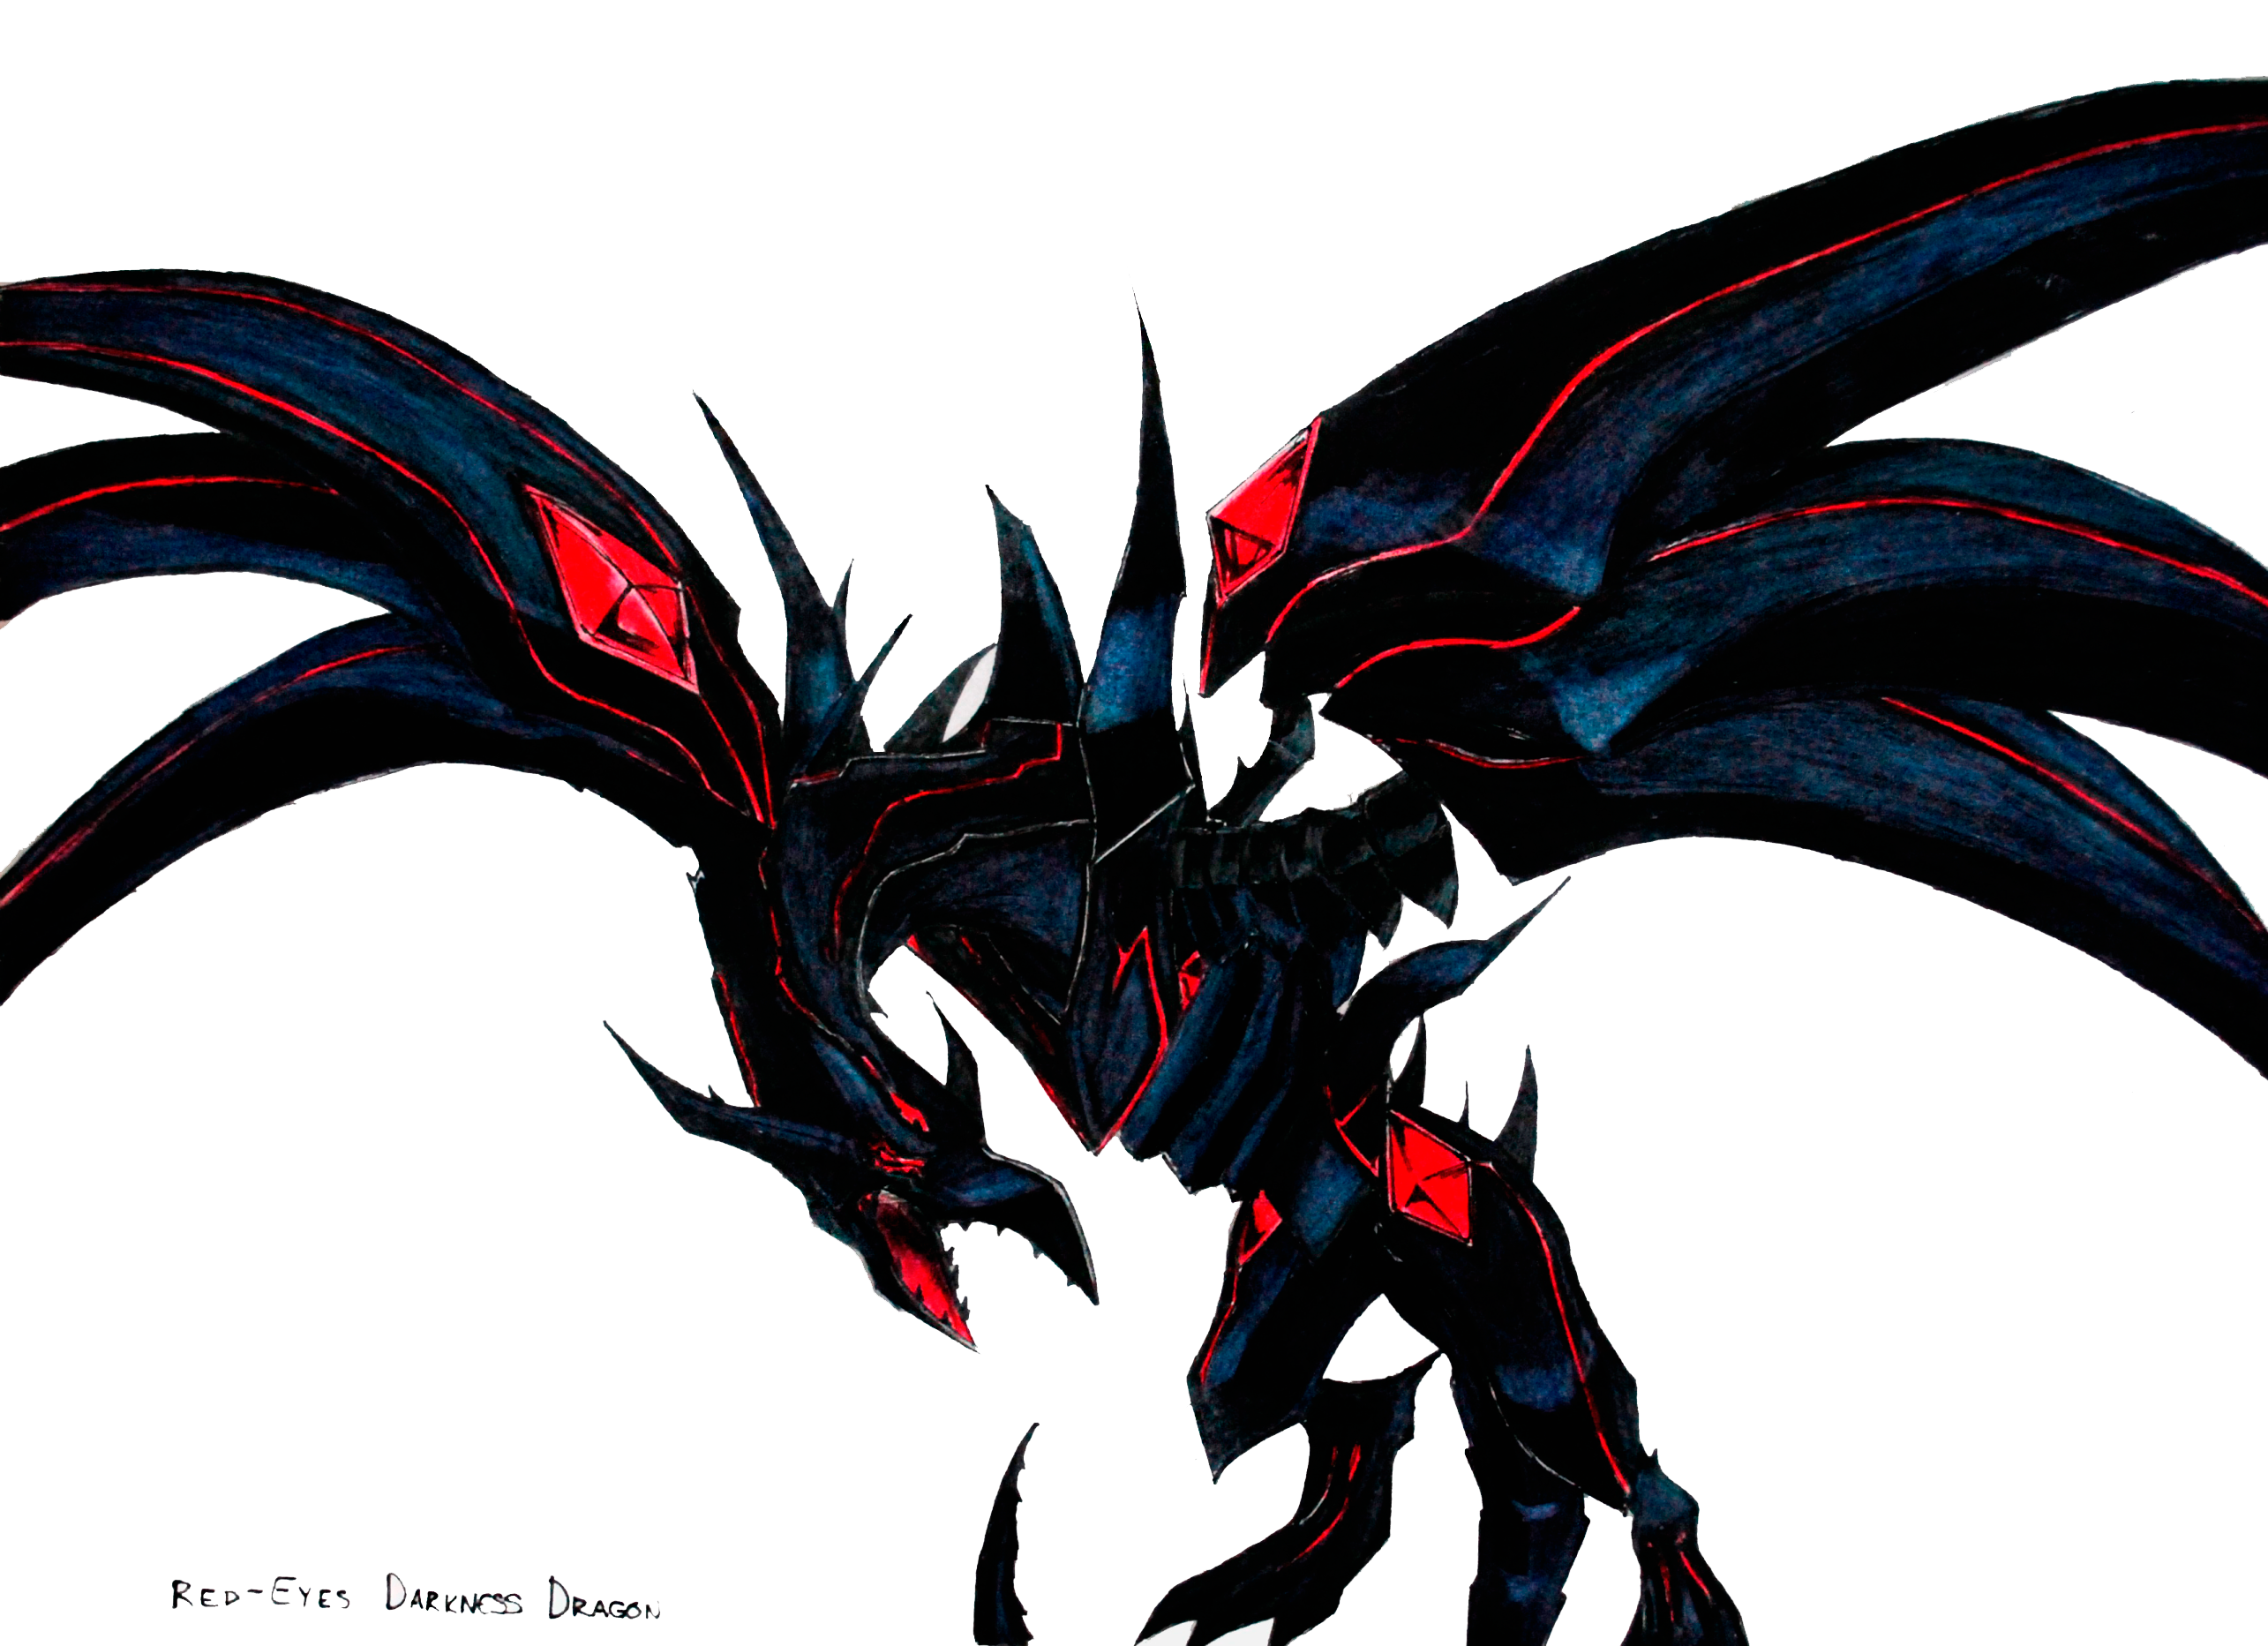 Red-eyes Darkness Dragon by GRAVEMIND1110 on DeviantArt